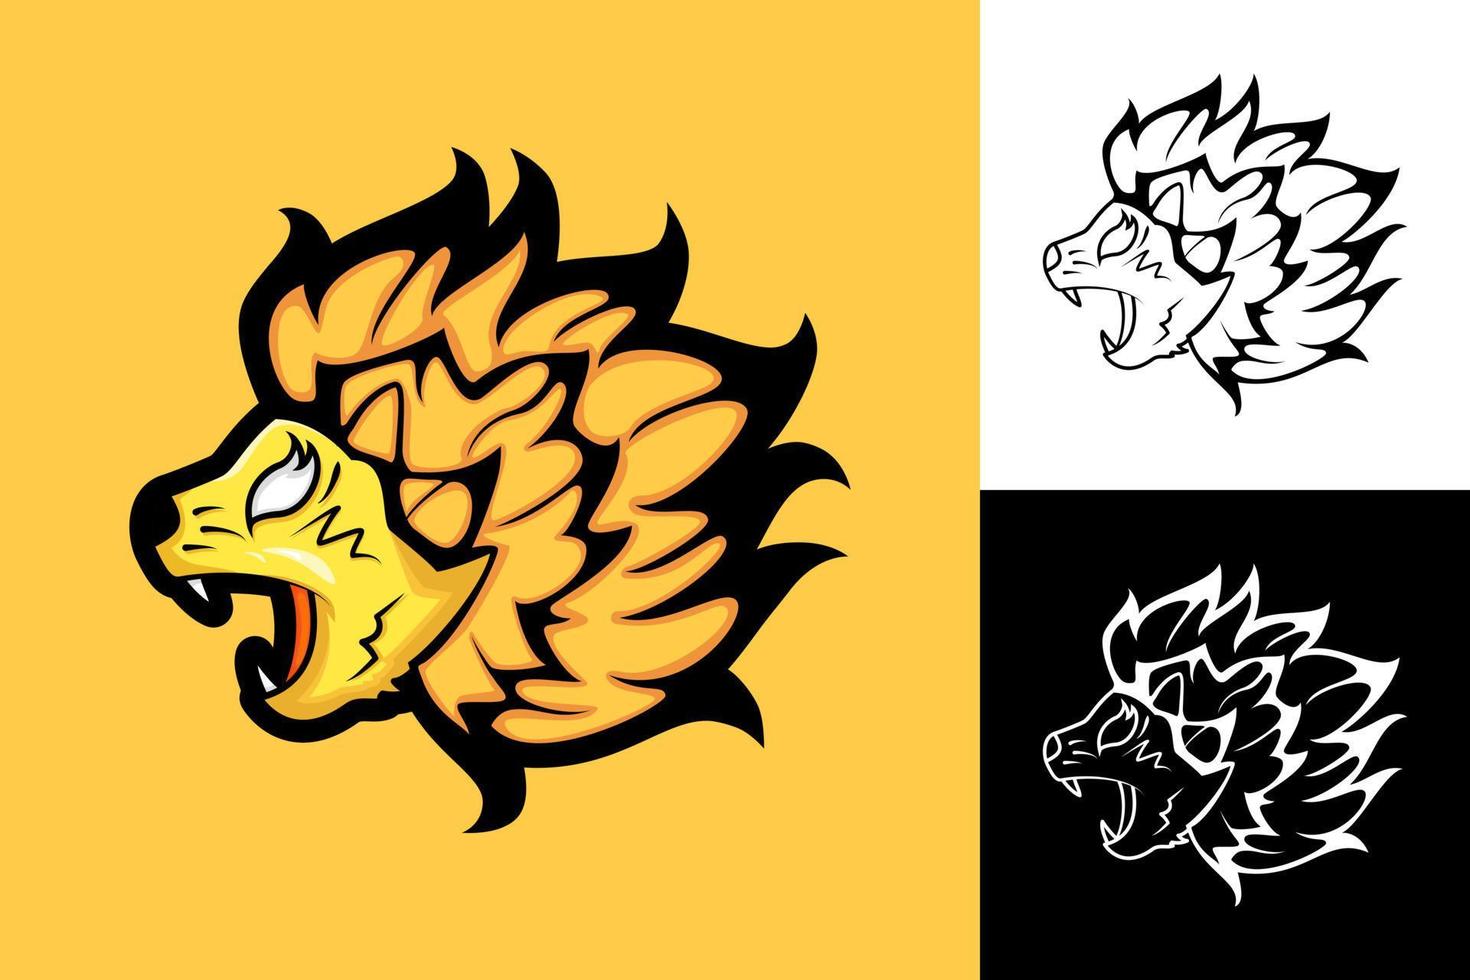 lejonhuvud illustration med argt uttryck. mun öppen. lämplig för logotyp, maskot, konst, ikon, symbol. orange, svart och vitt vektor